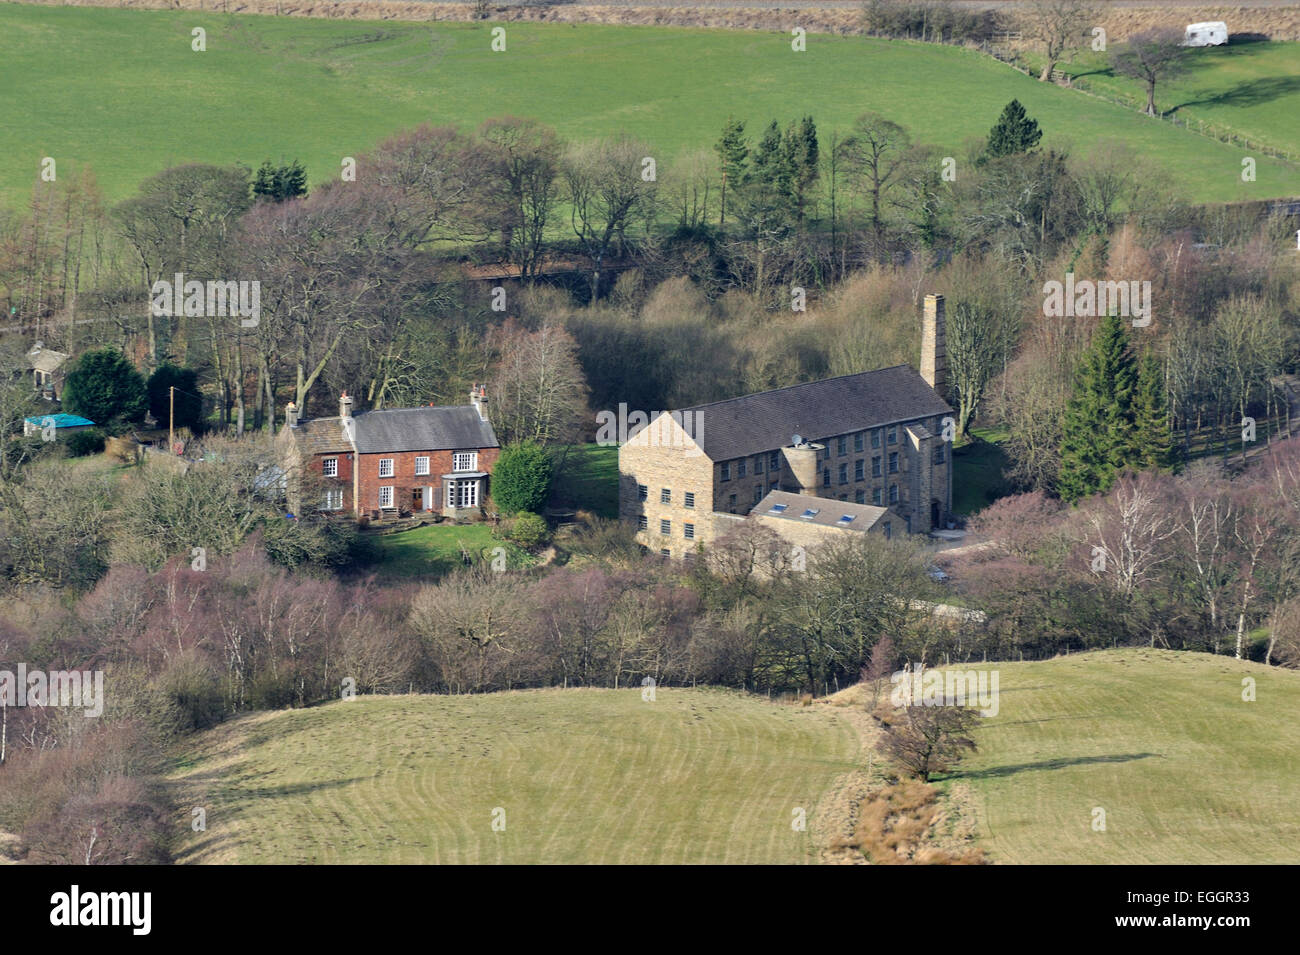 Vista aerea di un villaggio, vale di Edale, Peak District, Derbyshire, Regno Unito Foto Stock